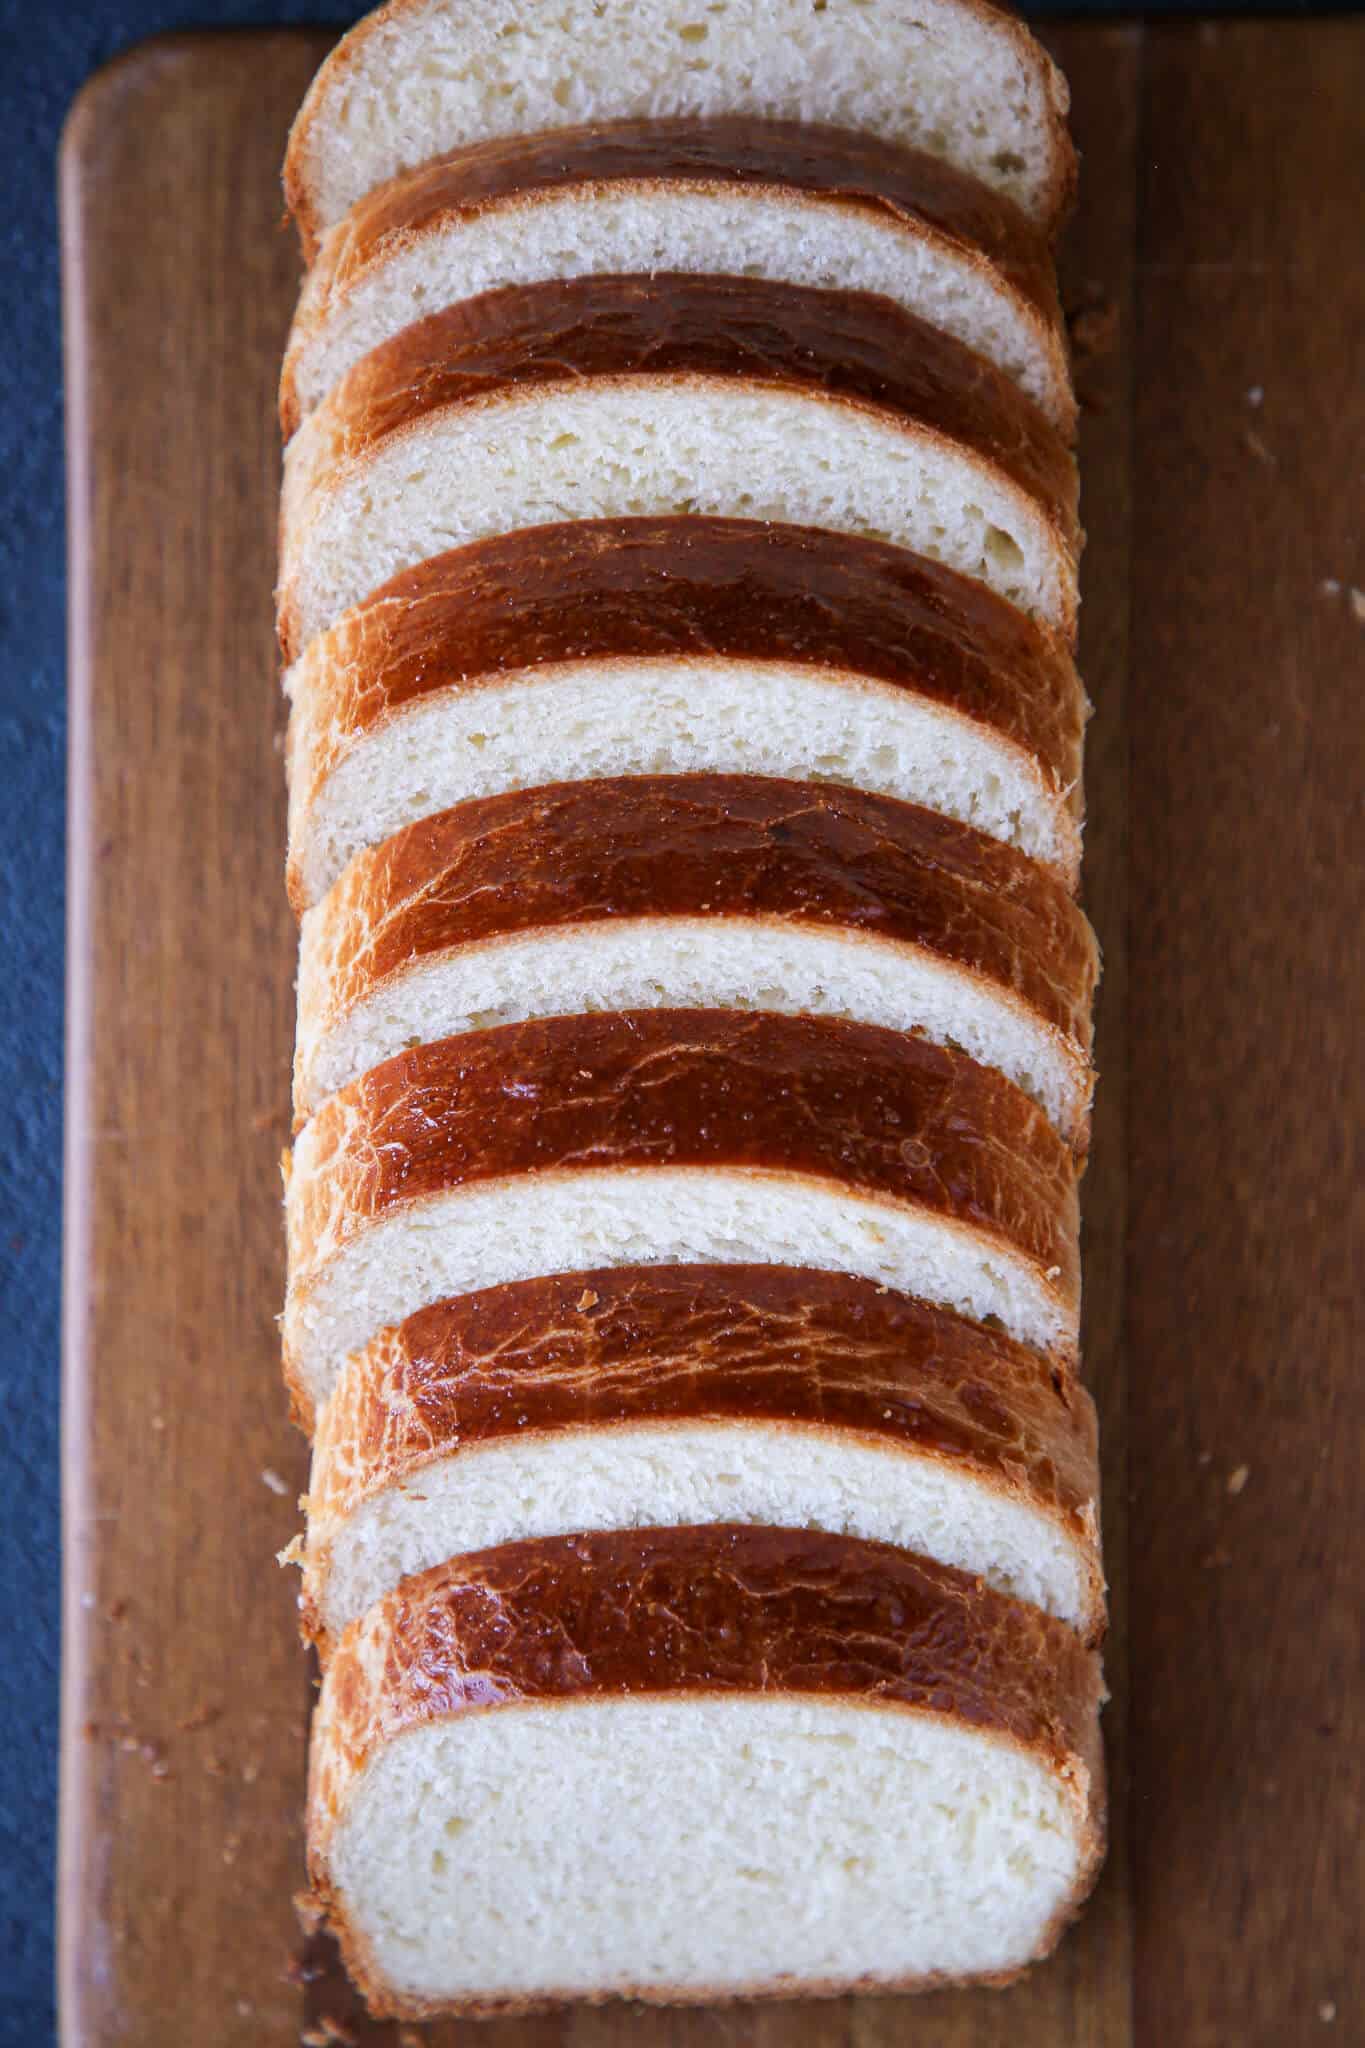 Loaf sliced vertically